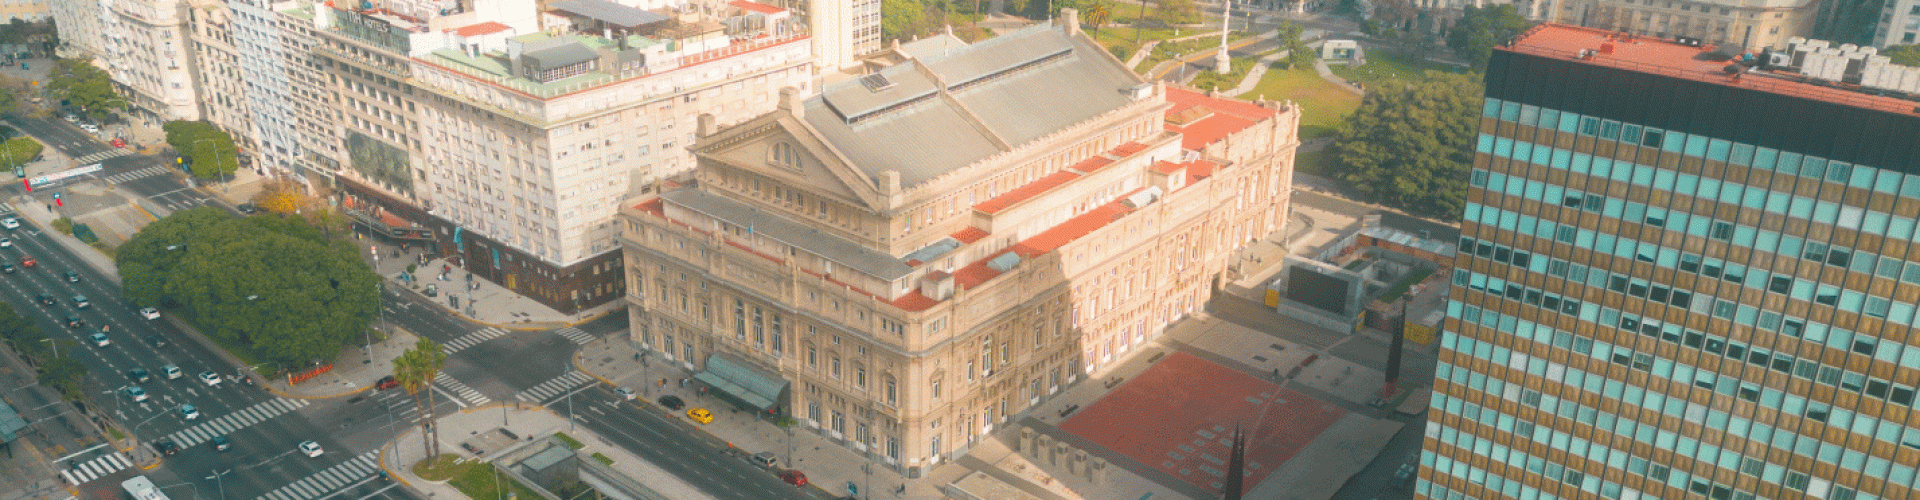 Teatro Colón Ciudad de Buenos Aires vista aérea